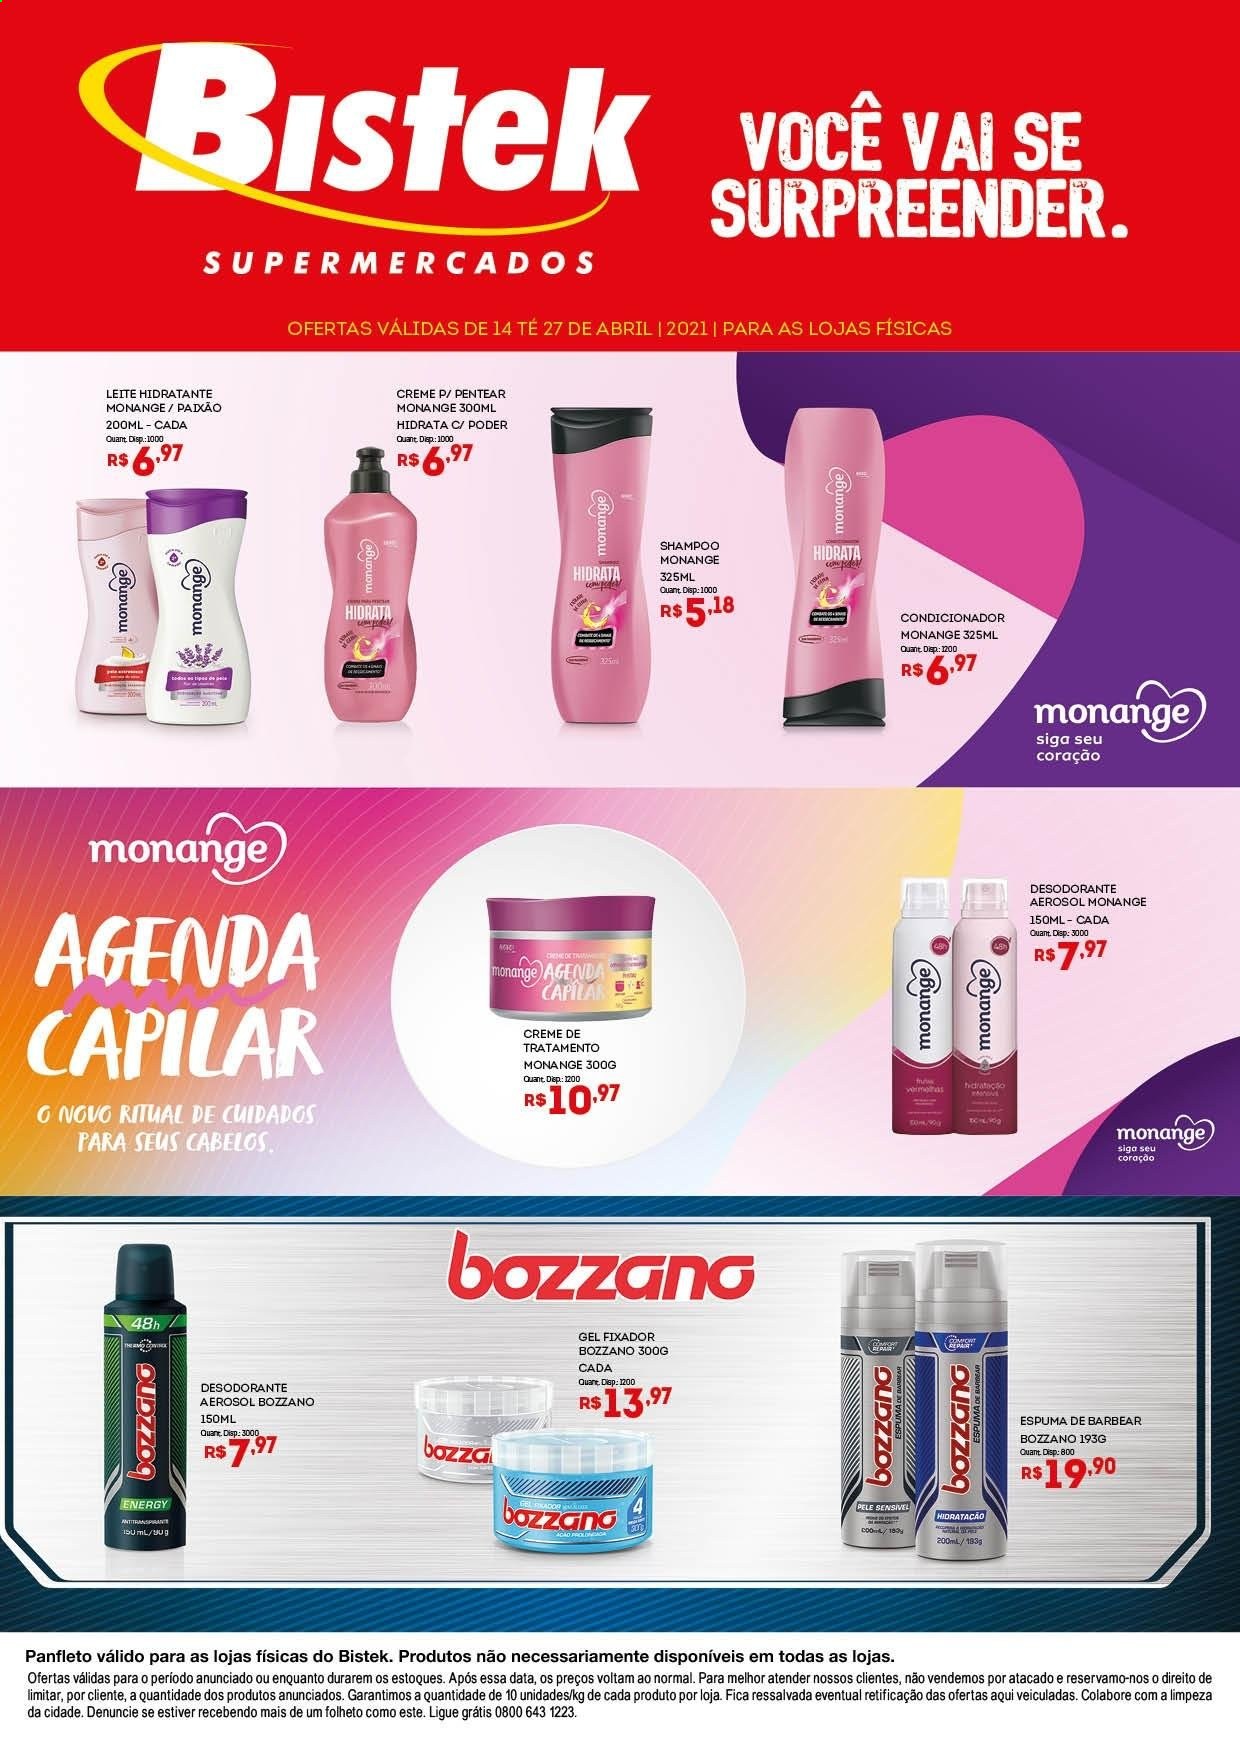 thumbnail - Folheto Bistek Supermercados - 14/04/2021 - 27/04/2021 - Produtos em promoção - shampoo, condicionador, desodorante, antitranspirante, espuma de barbear, agenda. Página 1.